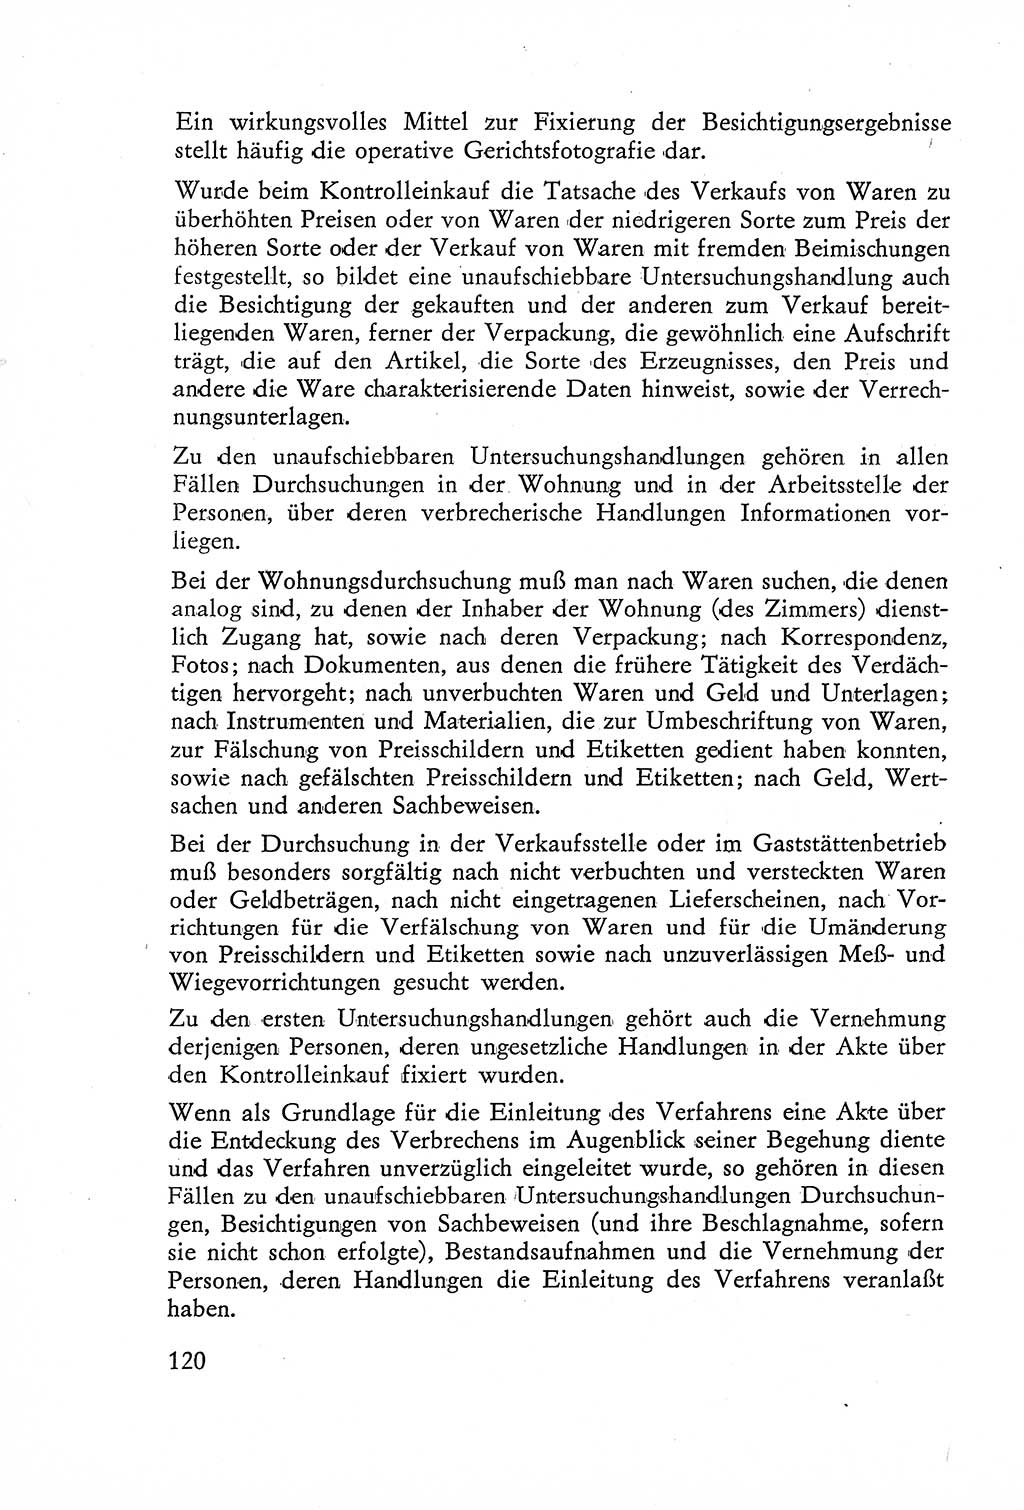 Die Untersuchung einzelner Verbrechensarten [Deutsche Demokratische Republik (DDR)] 1960, Seite 120 (Unters. Verbr.-Art. DDR 1960, S. 120)